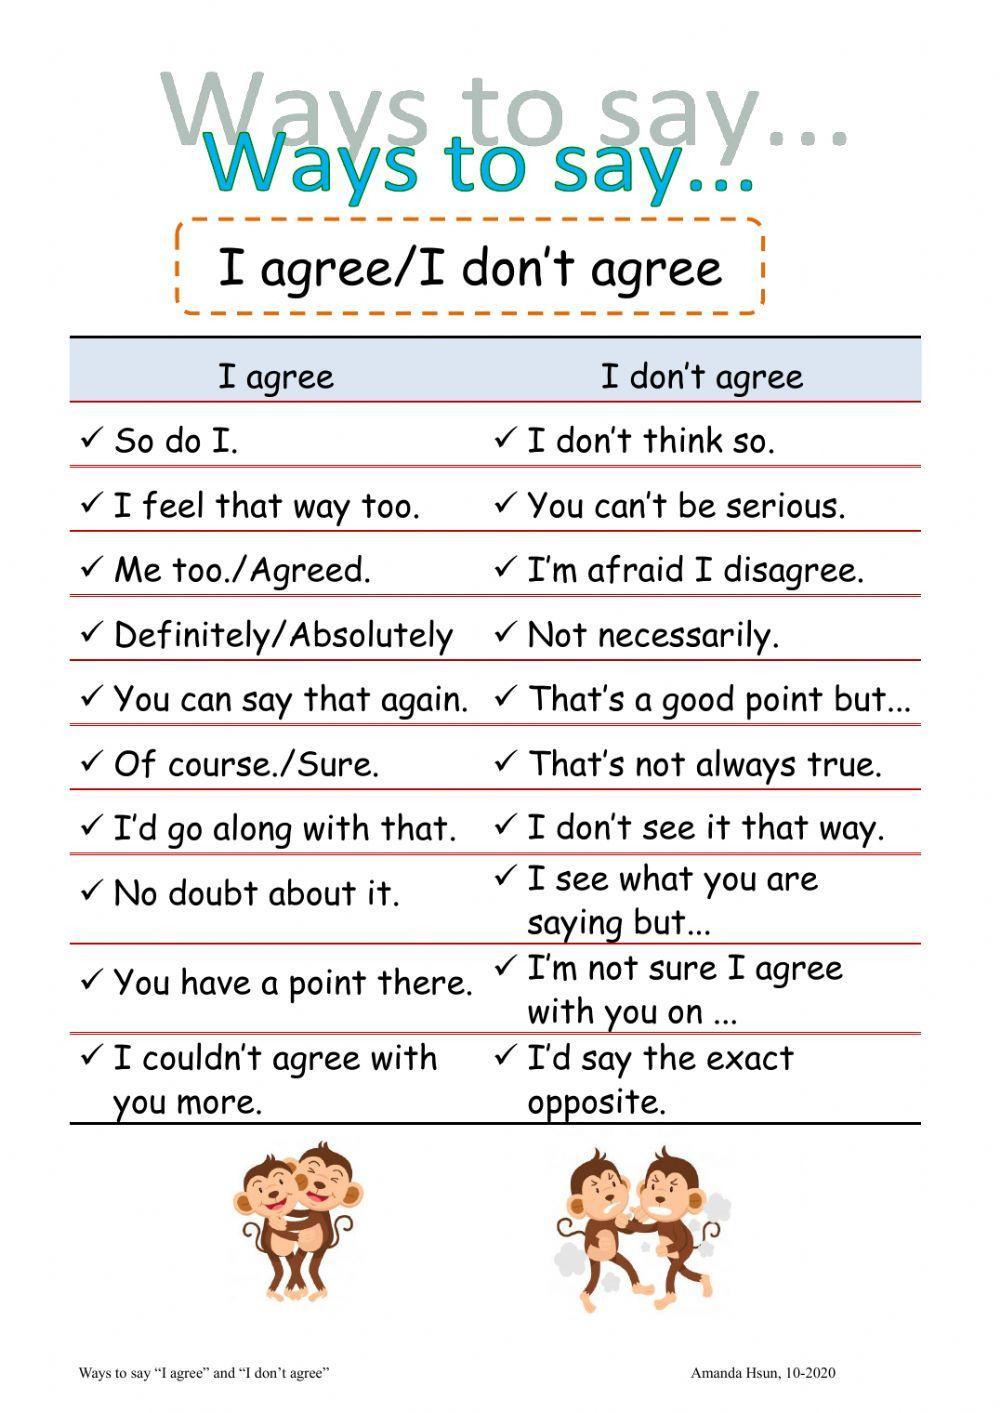 Ways to say I agree-disagree